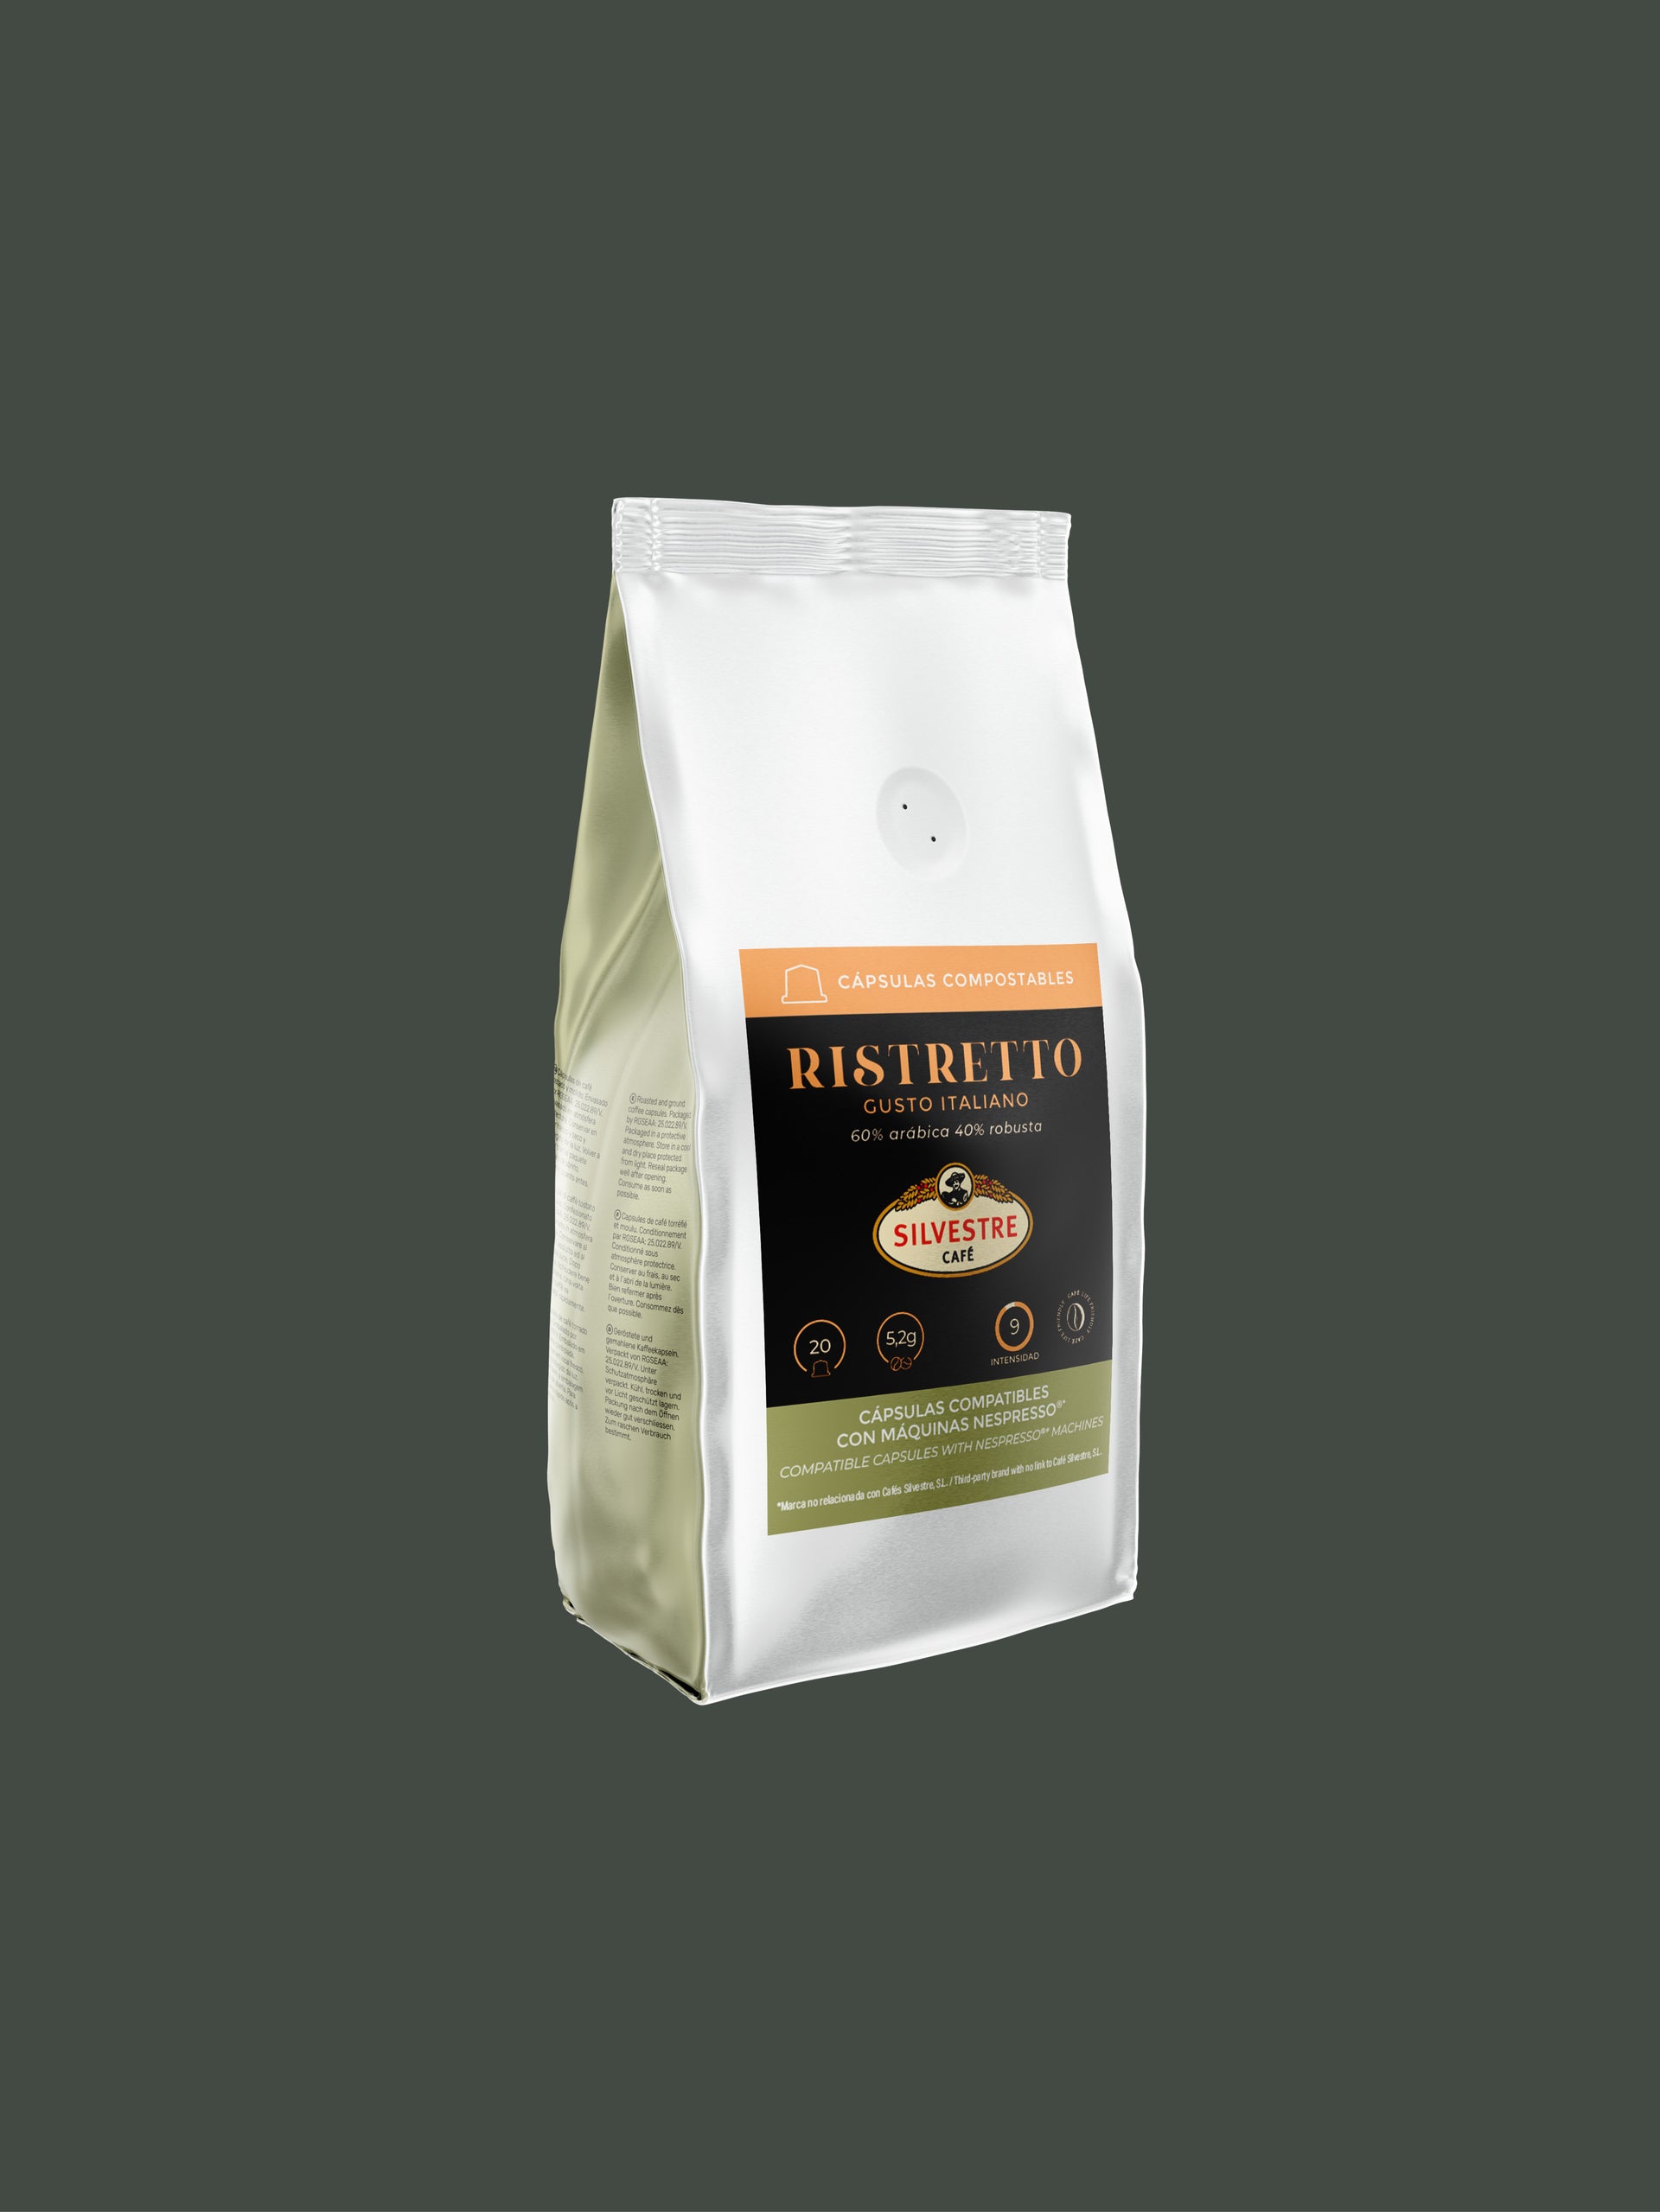 Ristretto - Capsules Compatibles Nespresso Compostables - Café Silvestre